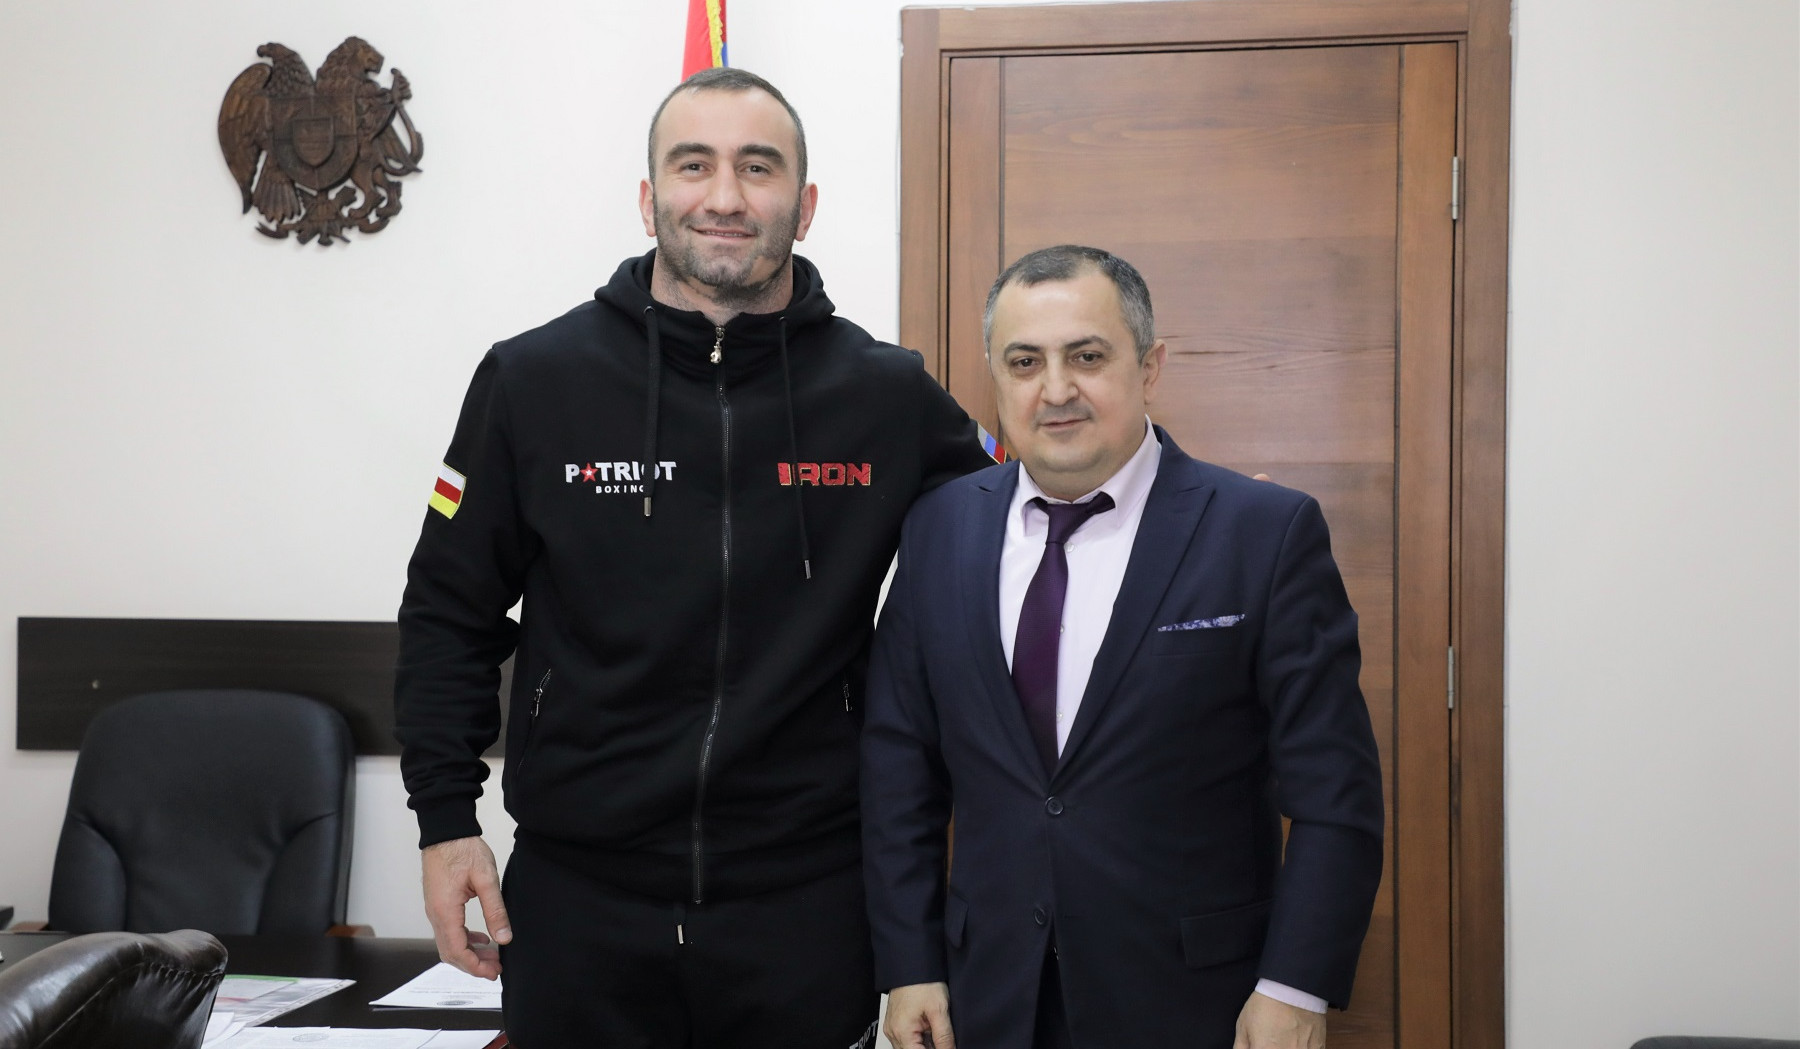 Պրոֆեսիոնալ բռնցքամարտիկ Մուրադ Գասիևը Հայաստանի քաղաքացիություն է ստացել